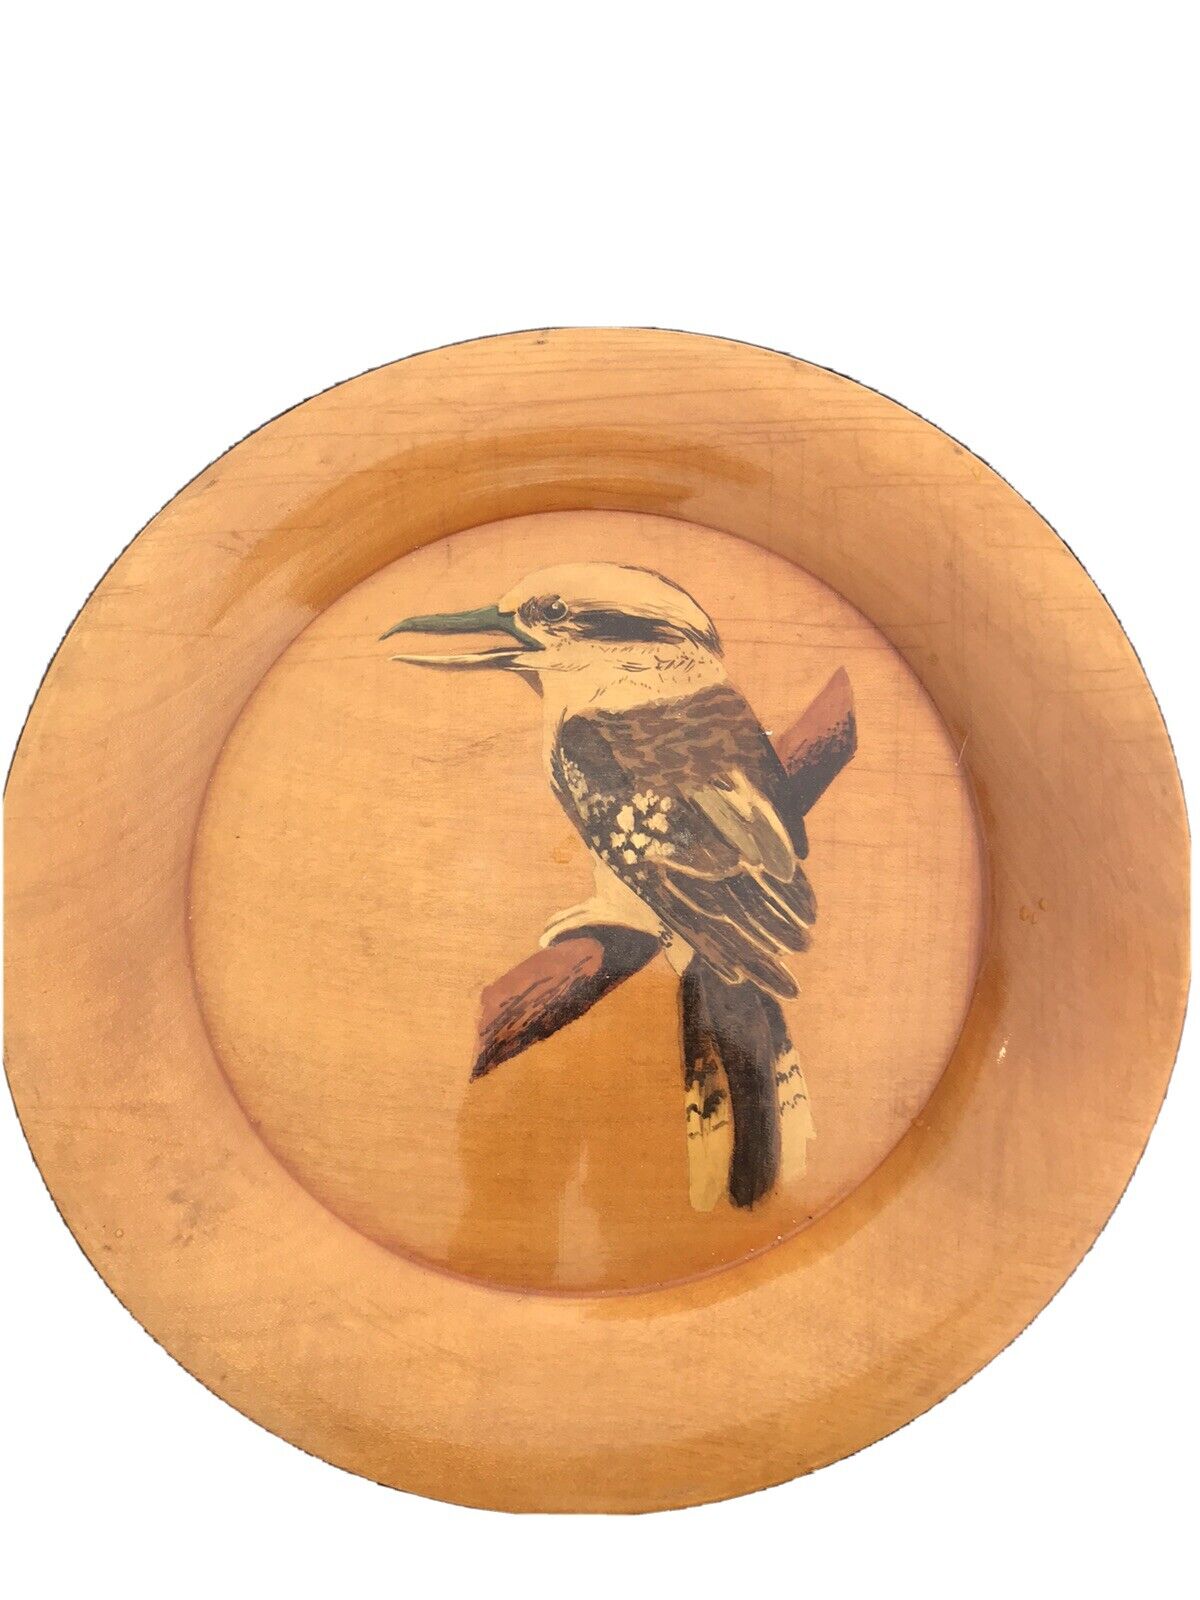 9 3/4” Blond Mahogany Wood Handpainted Kingfisher Bird Plate Signed Warner 1949